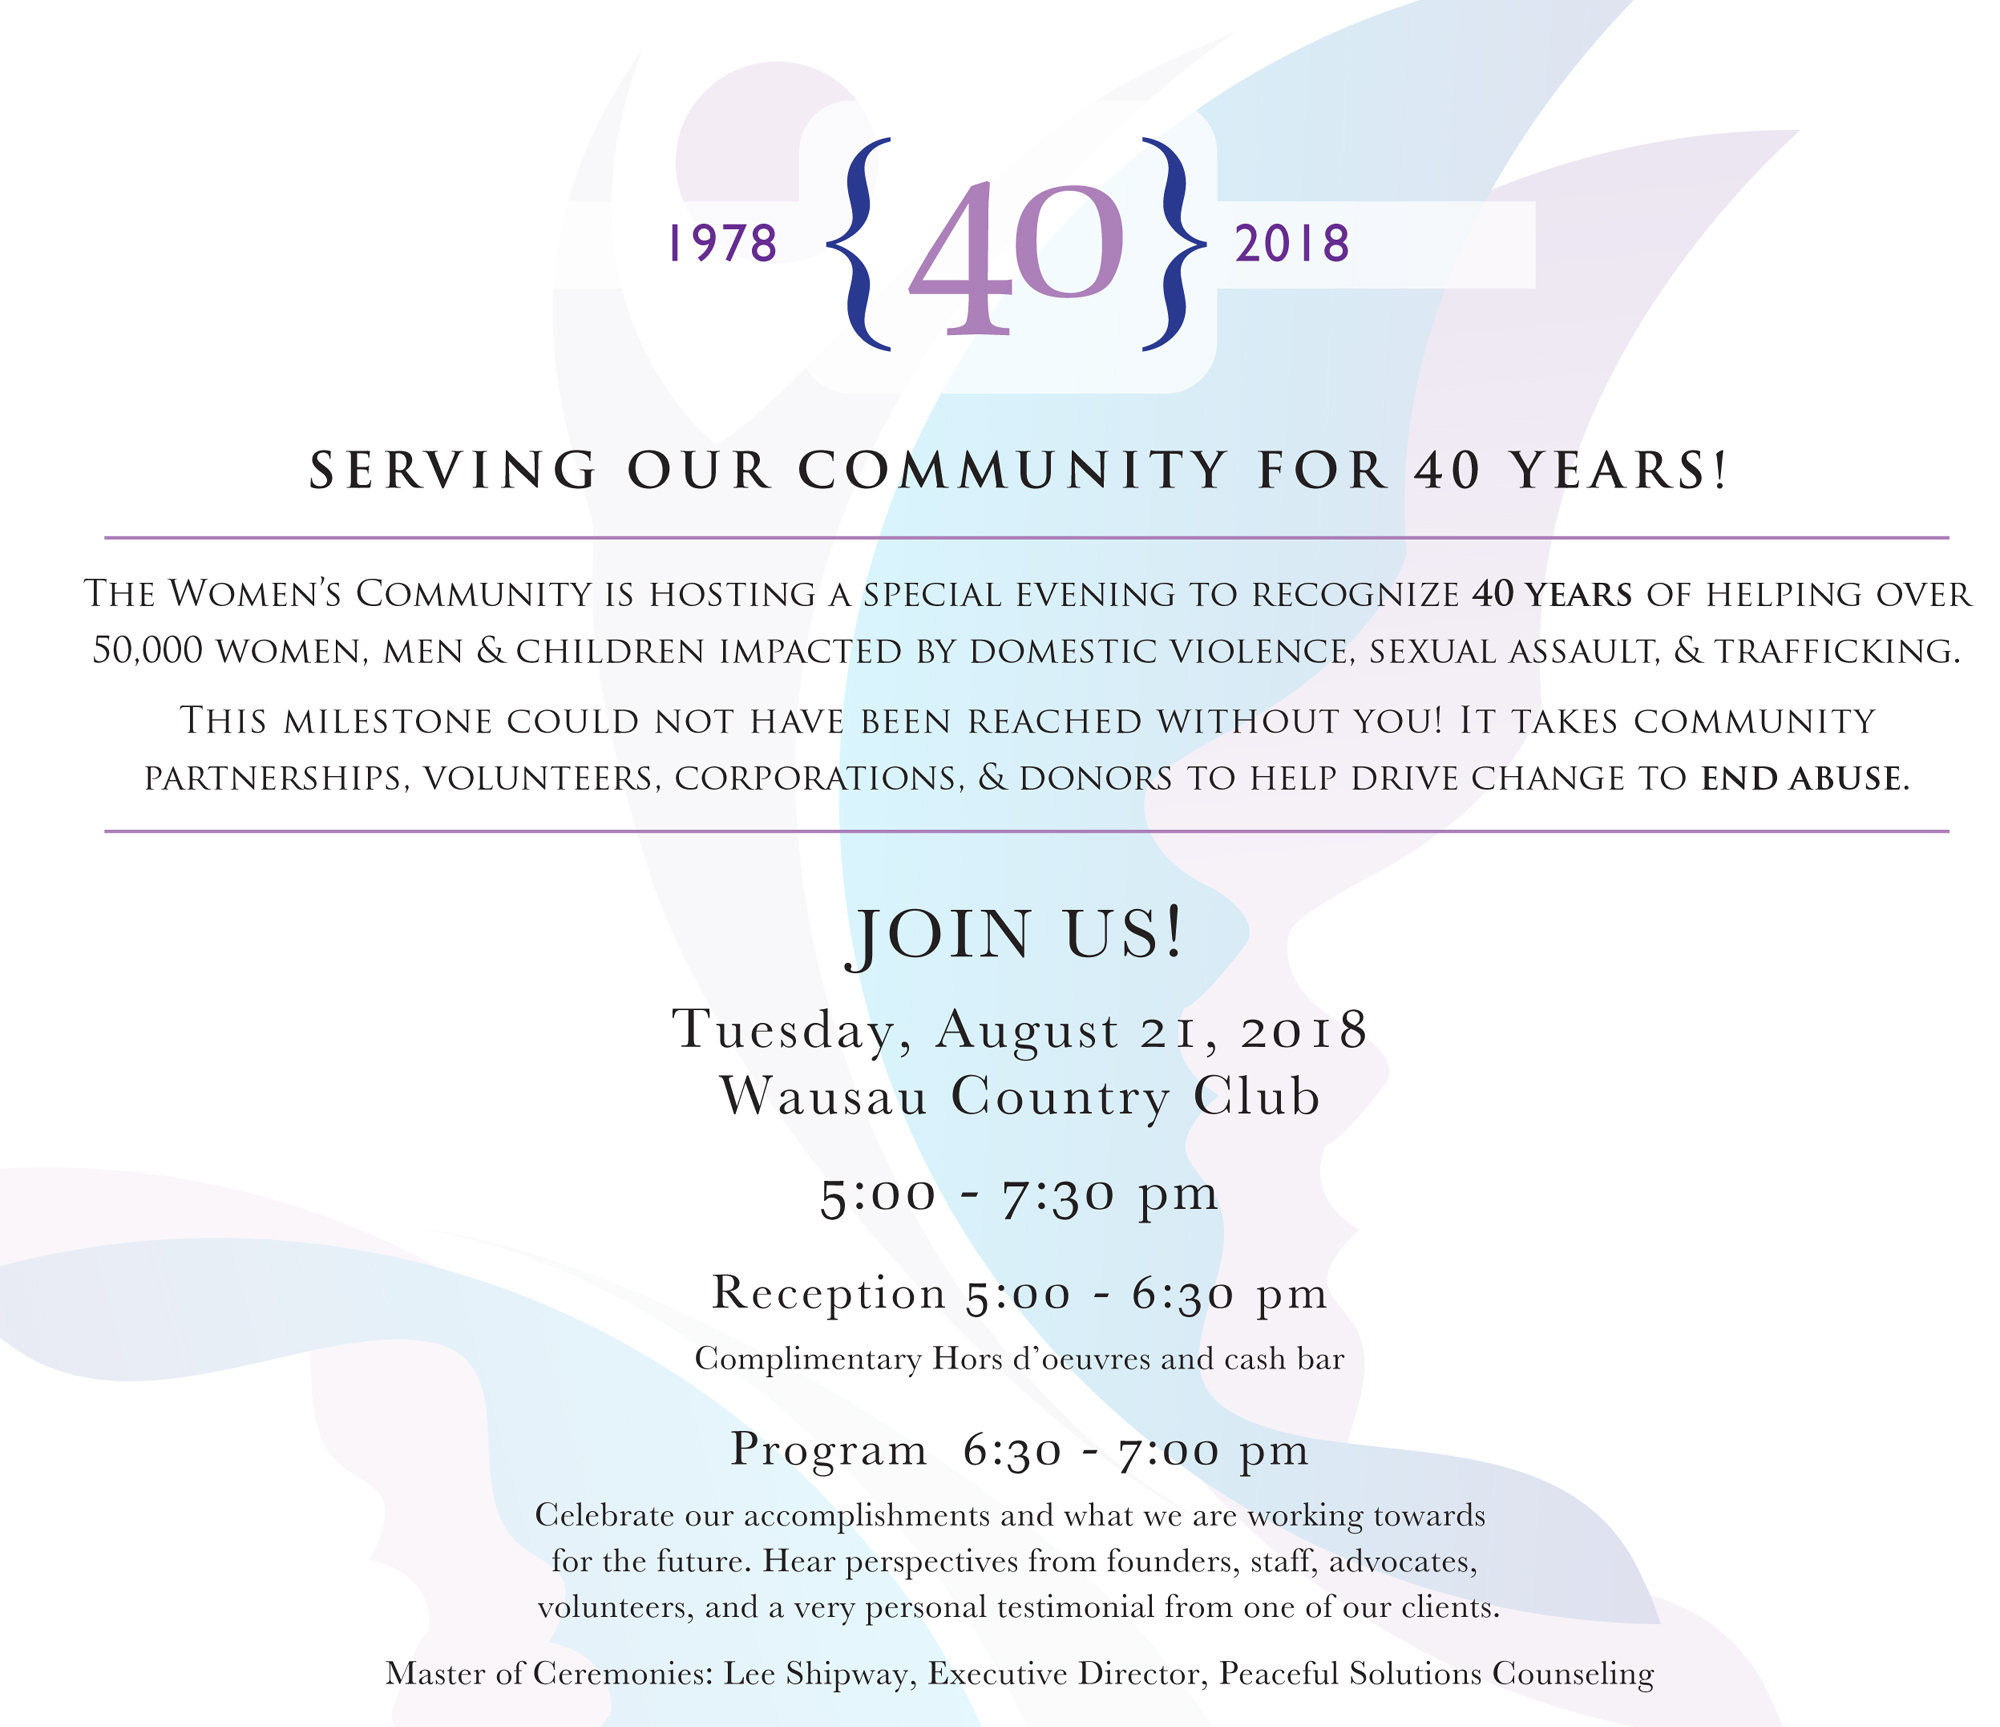 The Women's Community 40th Anniversary